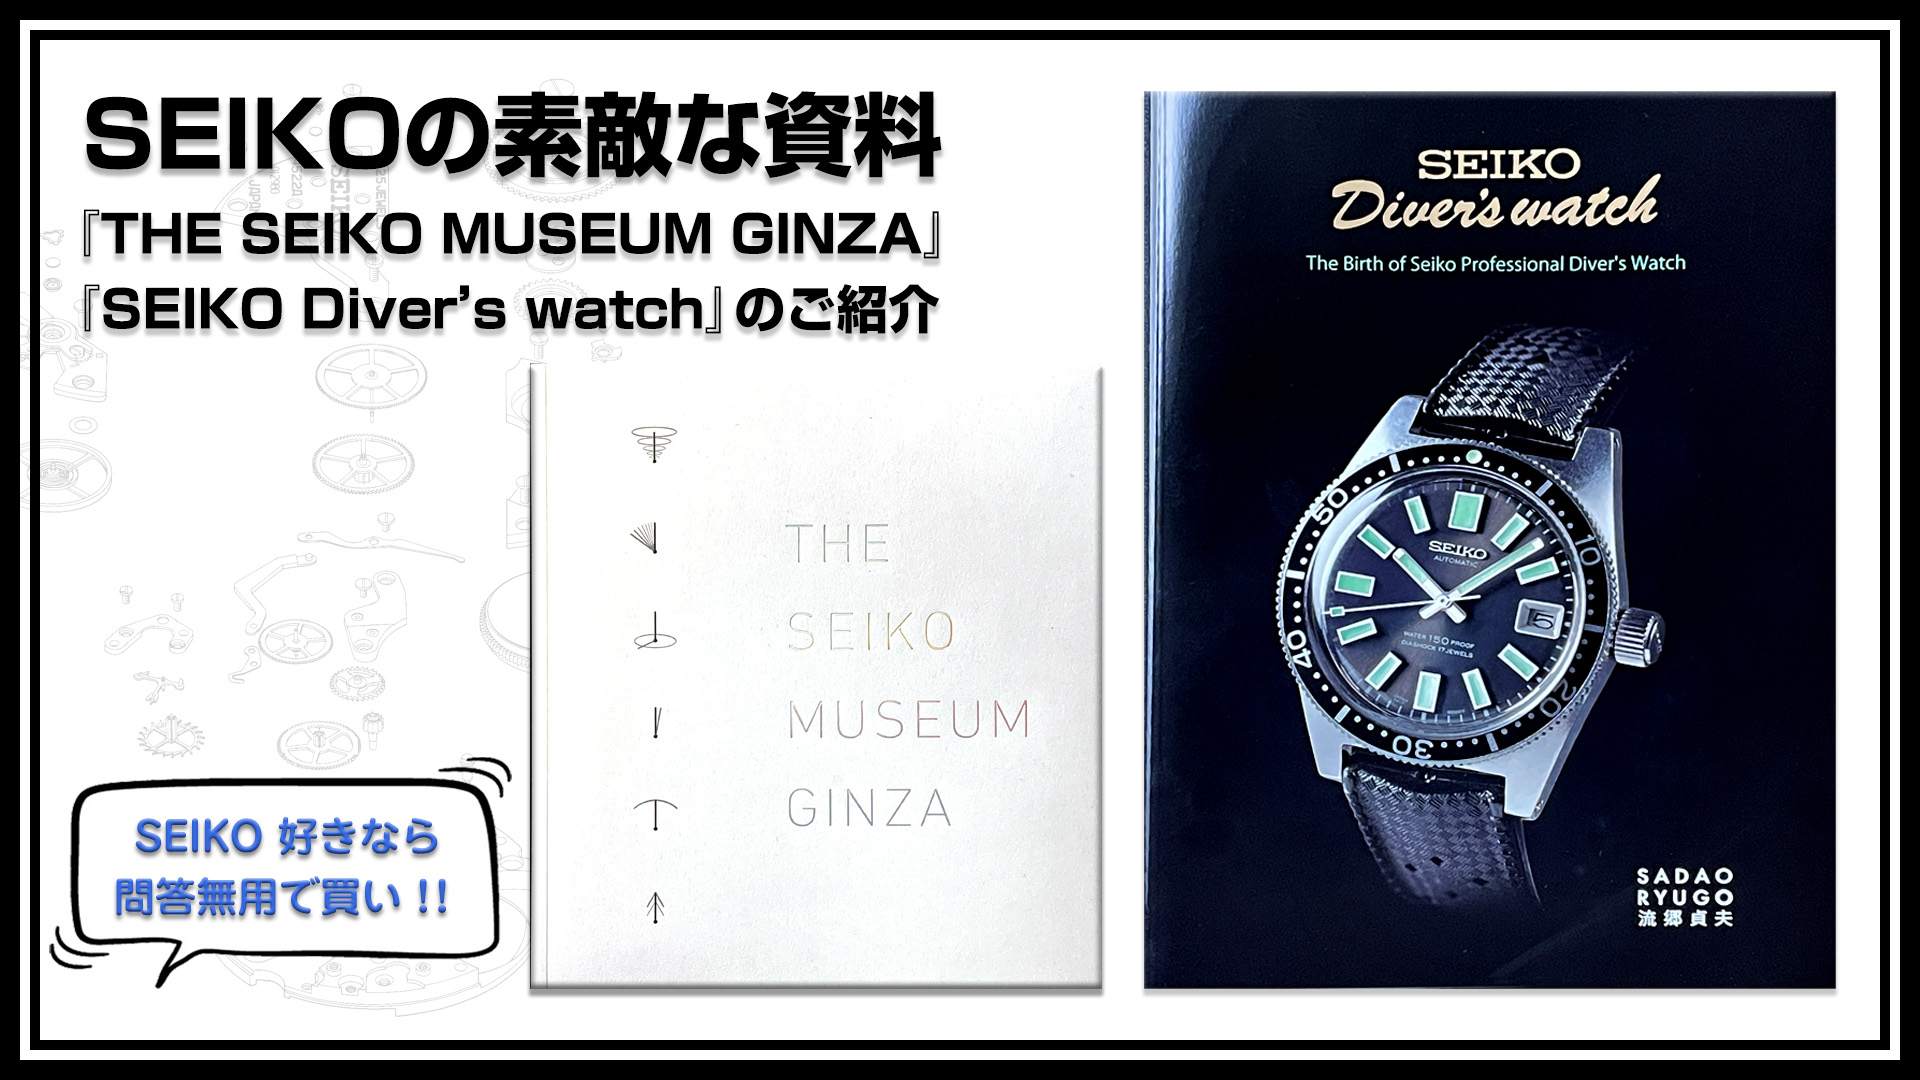 SEIKOの素敵な資料本『THE SEIKO MUSEUM GINZA』と『SEIKO Diver'ｓ 